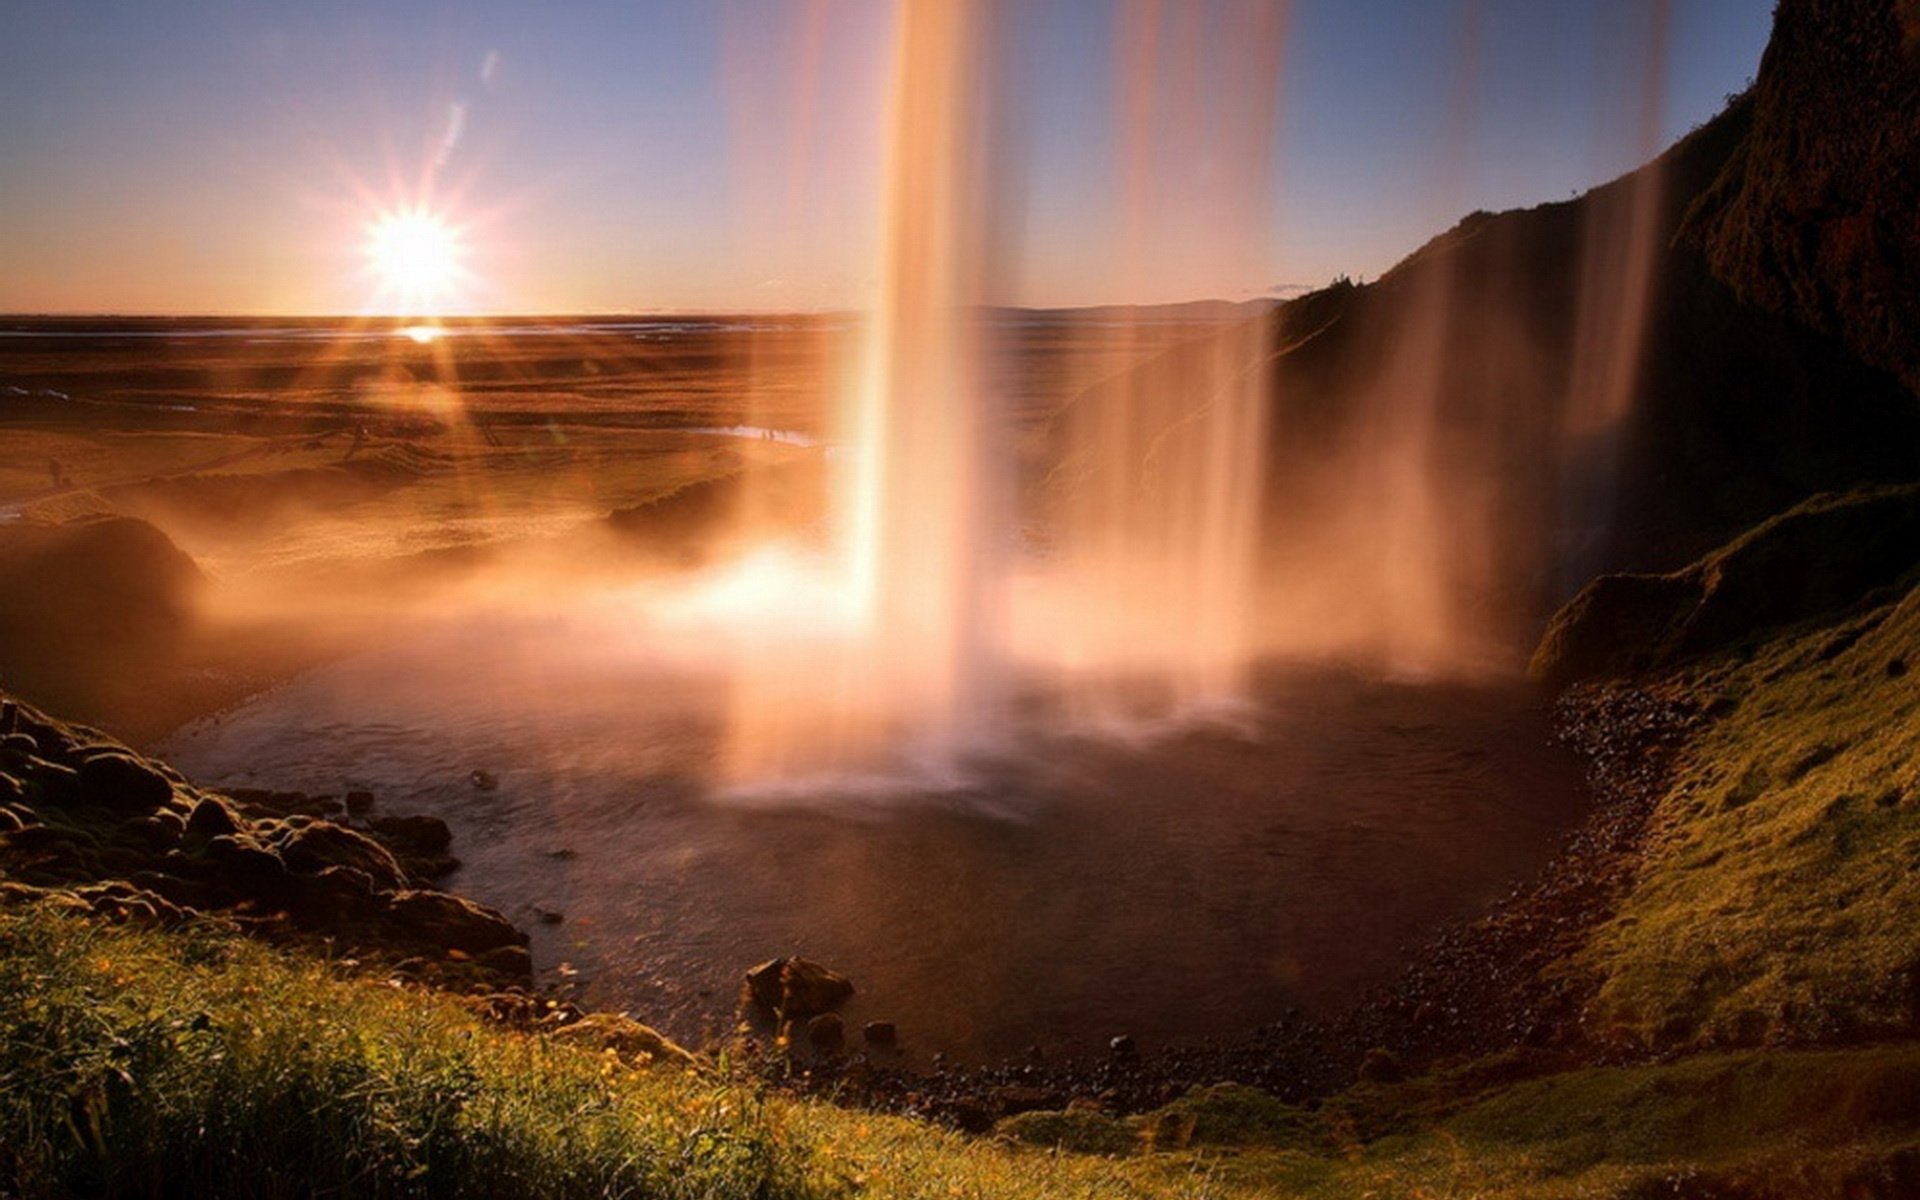 Без преувеличения это благодатная земля потрясающей природы. Водопад Годафосс, Исландия. Пейзажи Джеймса Эпплтона. Водопад Сельяландсфосс, Исландия закат. Удивительные пейзажи.